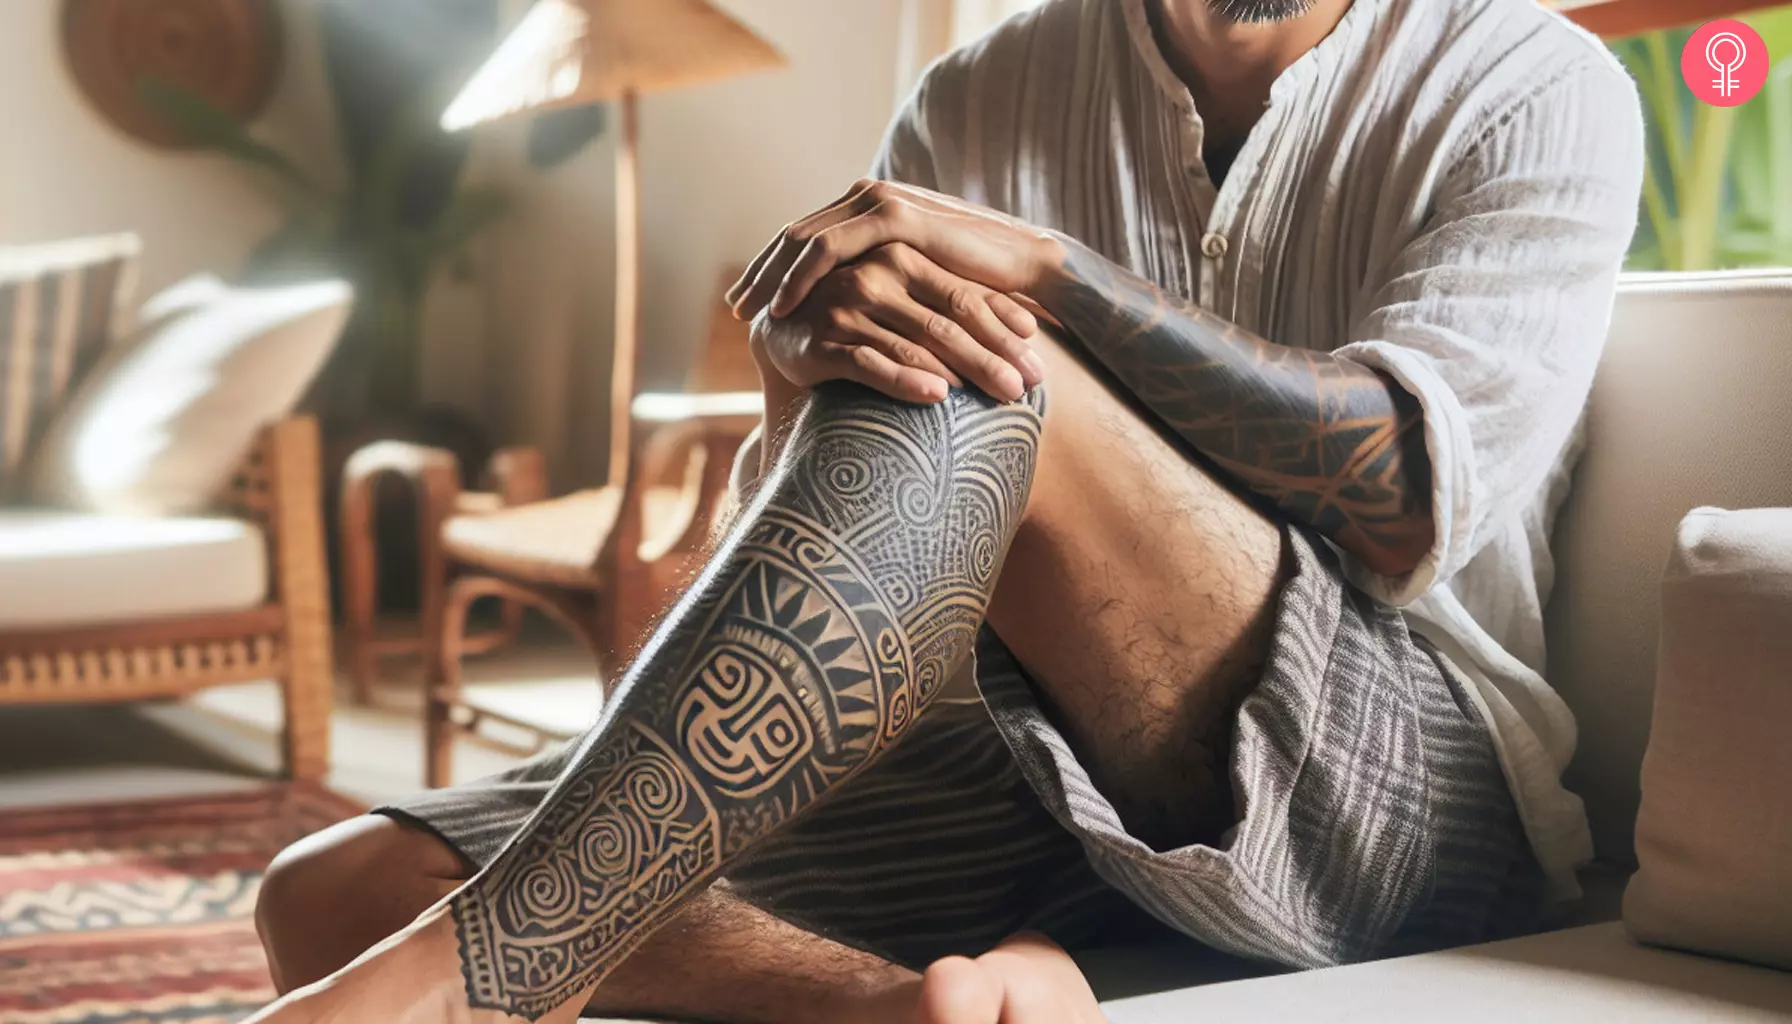 A Mayan tribal tattoo on a man’s leg